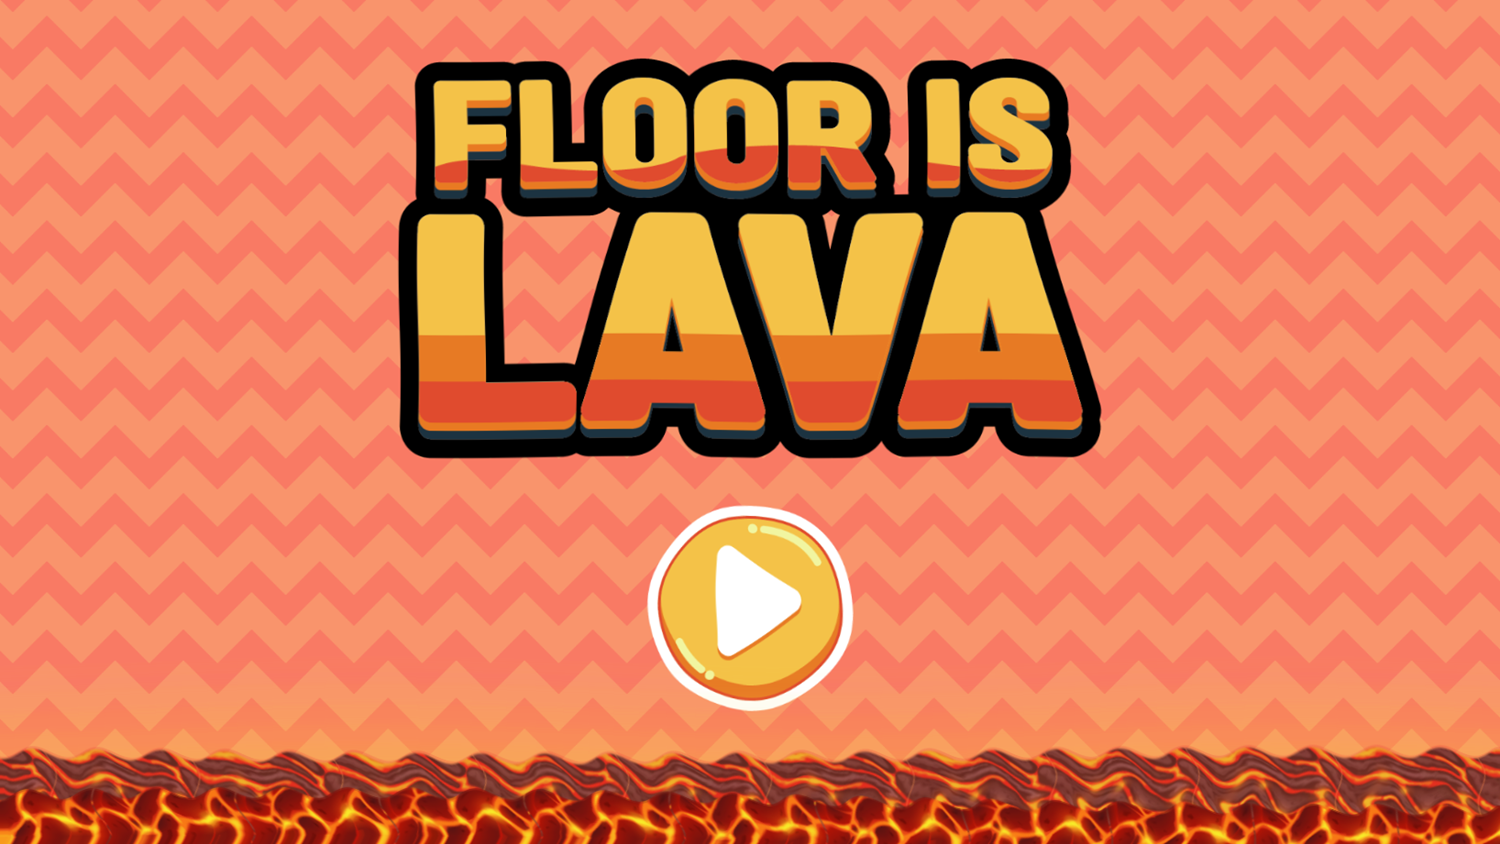 Floor is Lava Game Welcome Screen Screenshot.